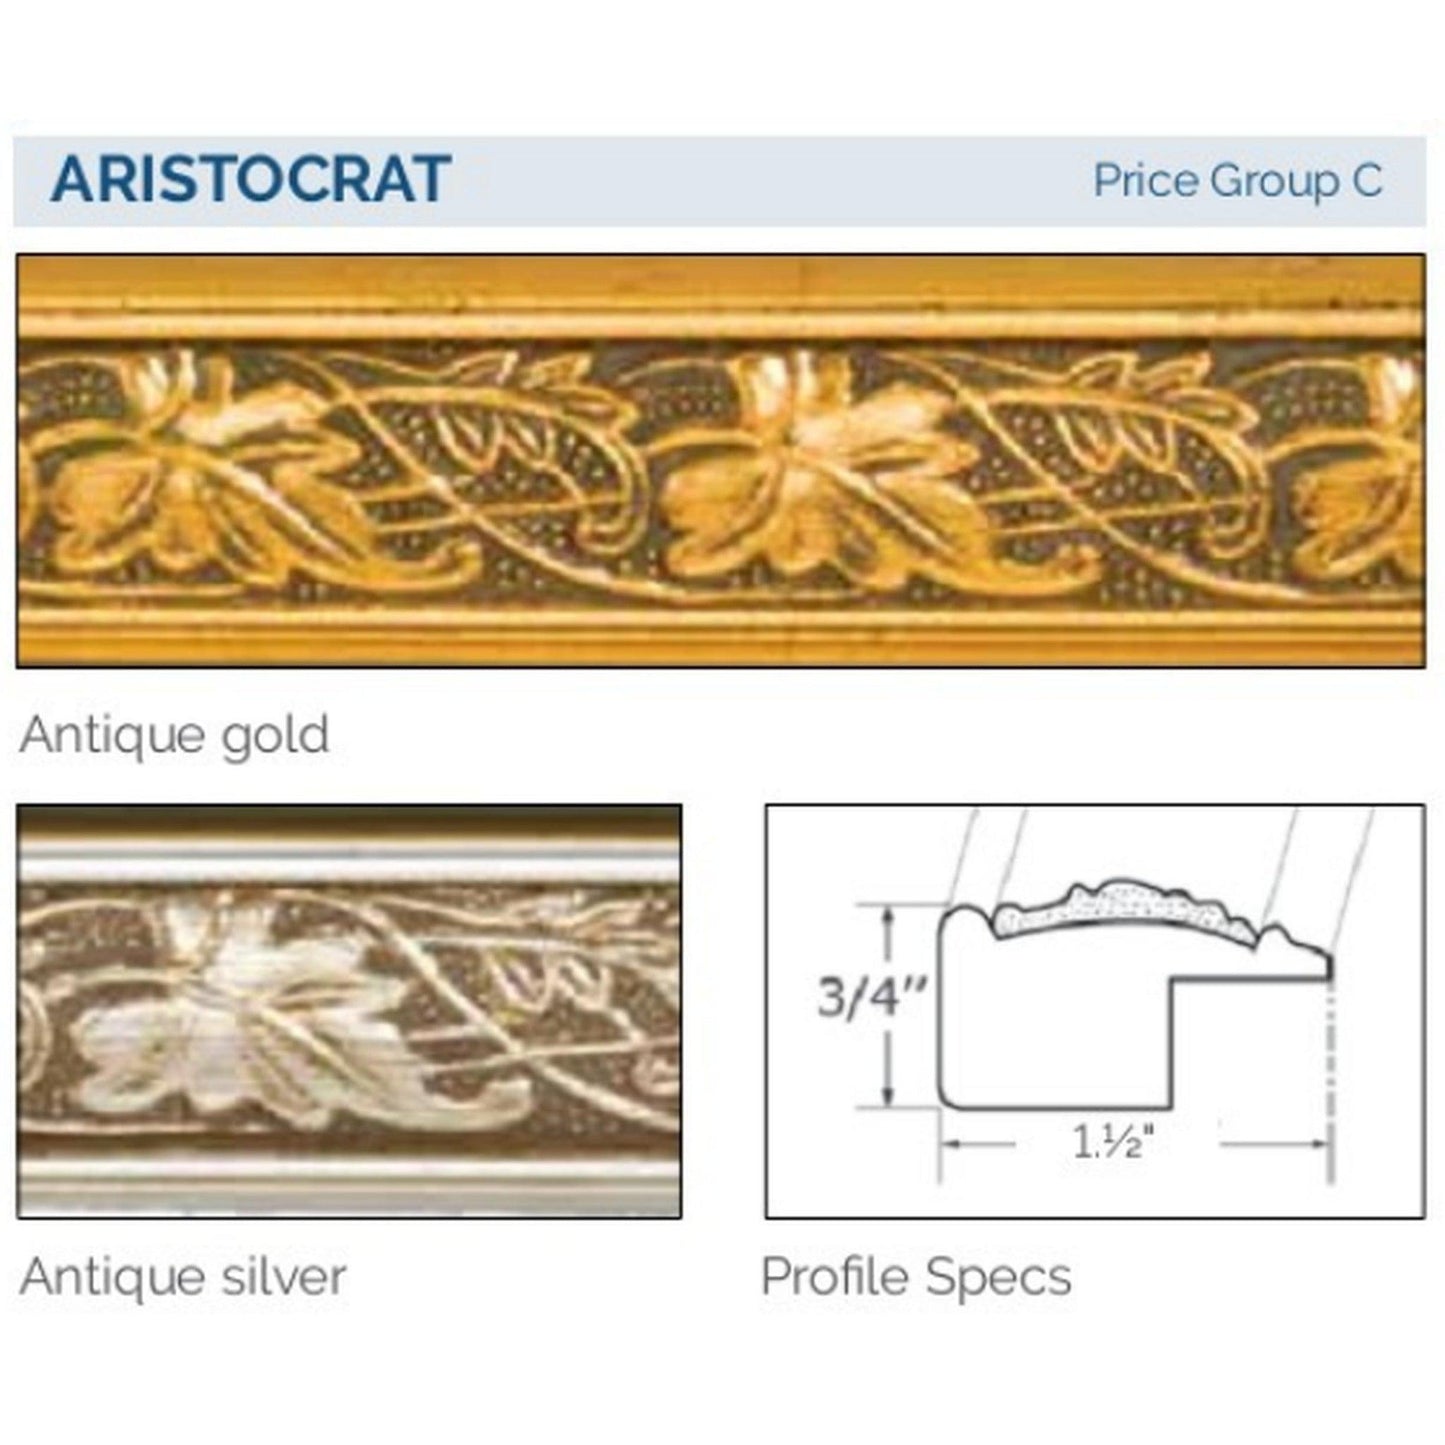 Afina Signature 33" x 23" Aristocrat Antique Silver Recessed Retro-Fit Double Door Medicine Cabinet With Beveled Edge Mirror